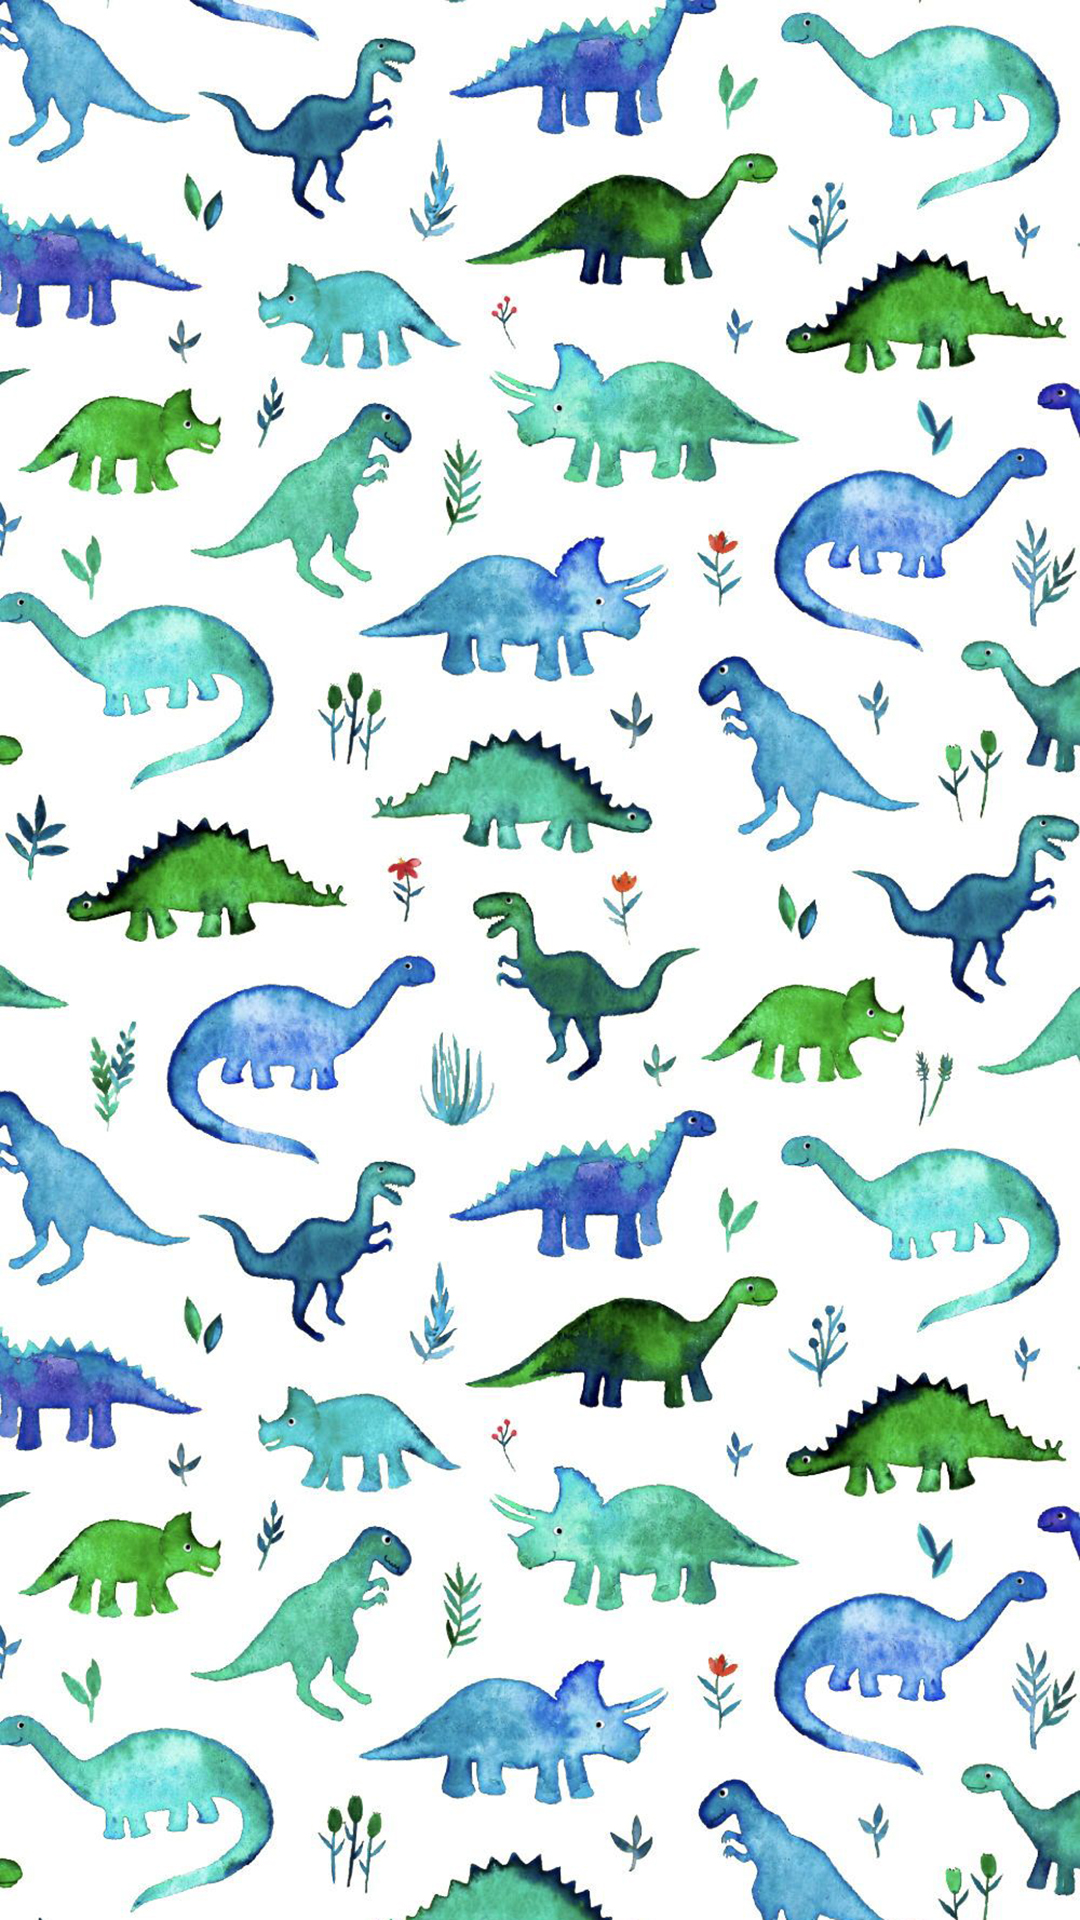 Dinosaur Wallpapers: Free HD Download [500+ HQ] | Unsplash